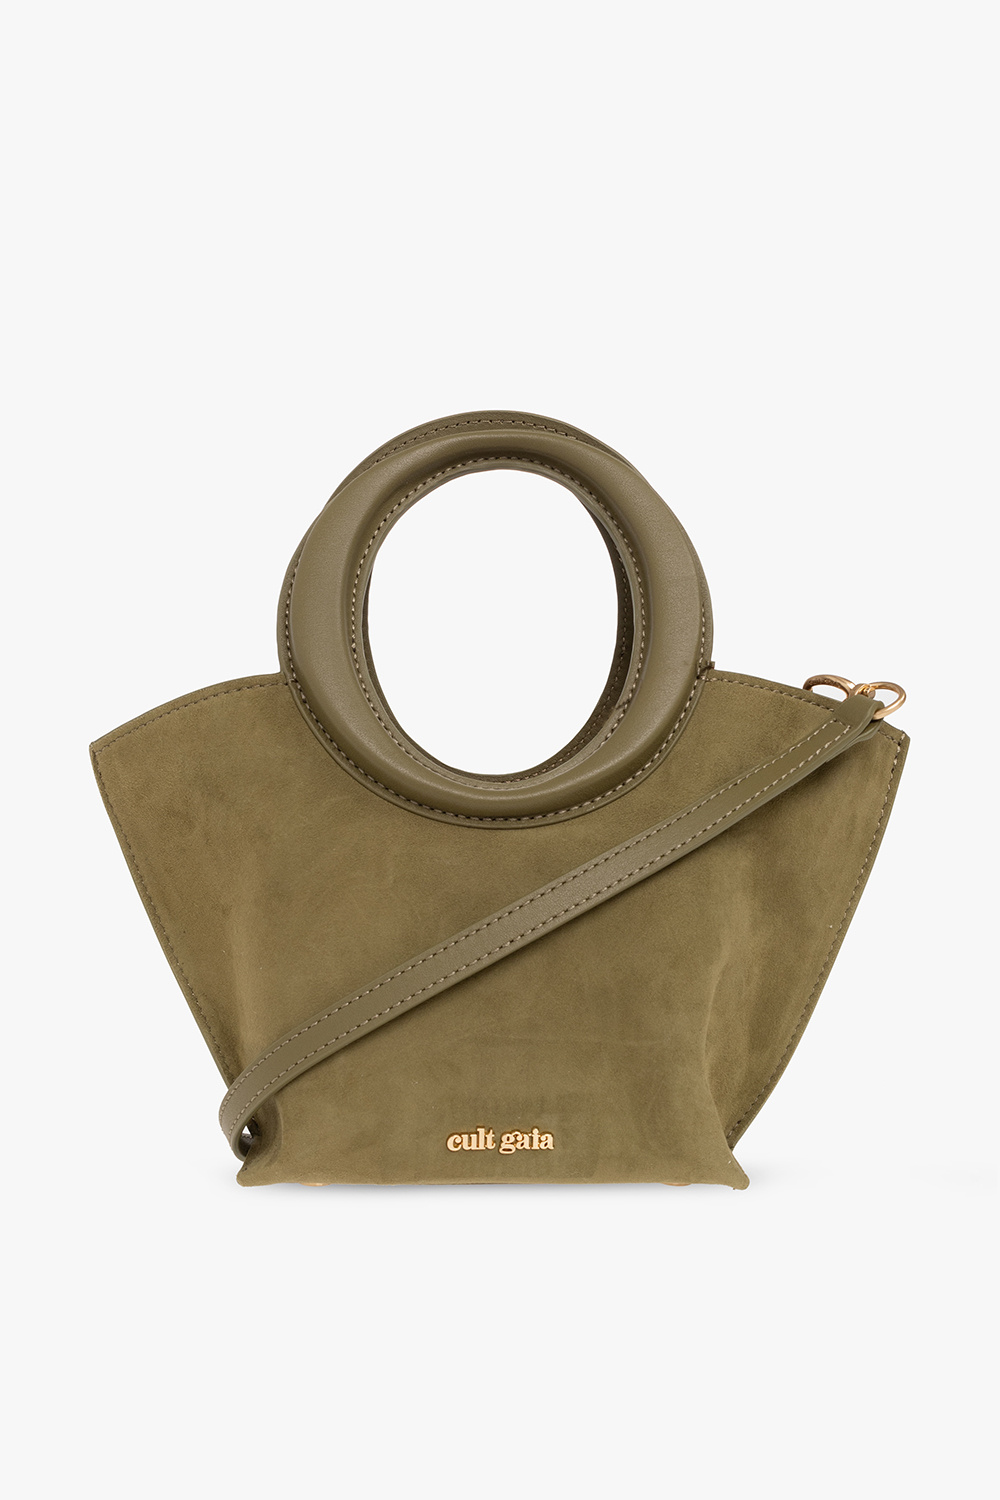 Cult Gaia ‘Ansel Mini’ shoulder bag